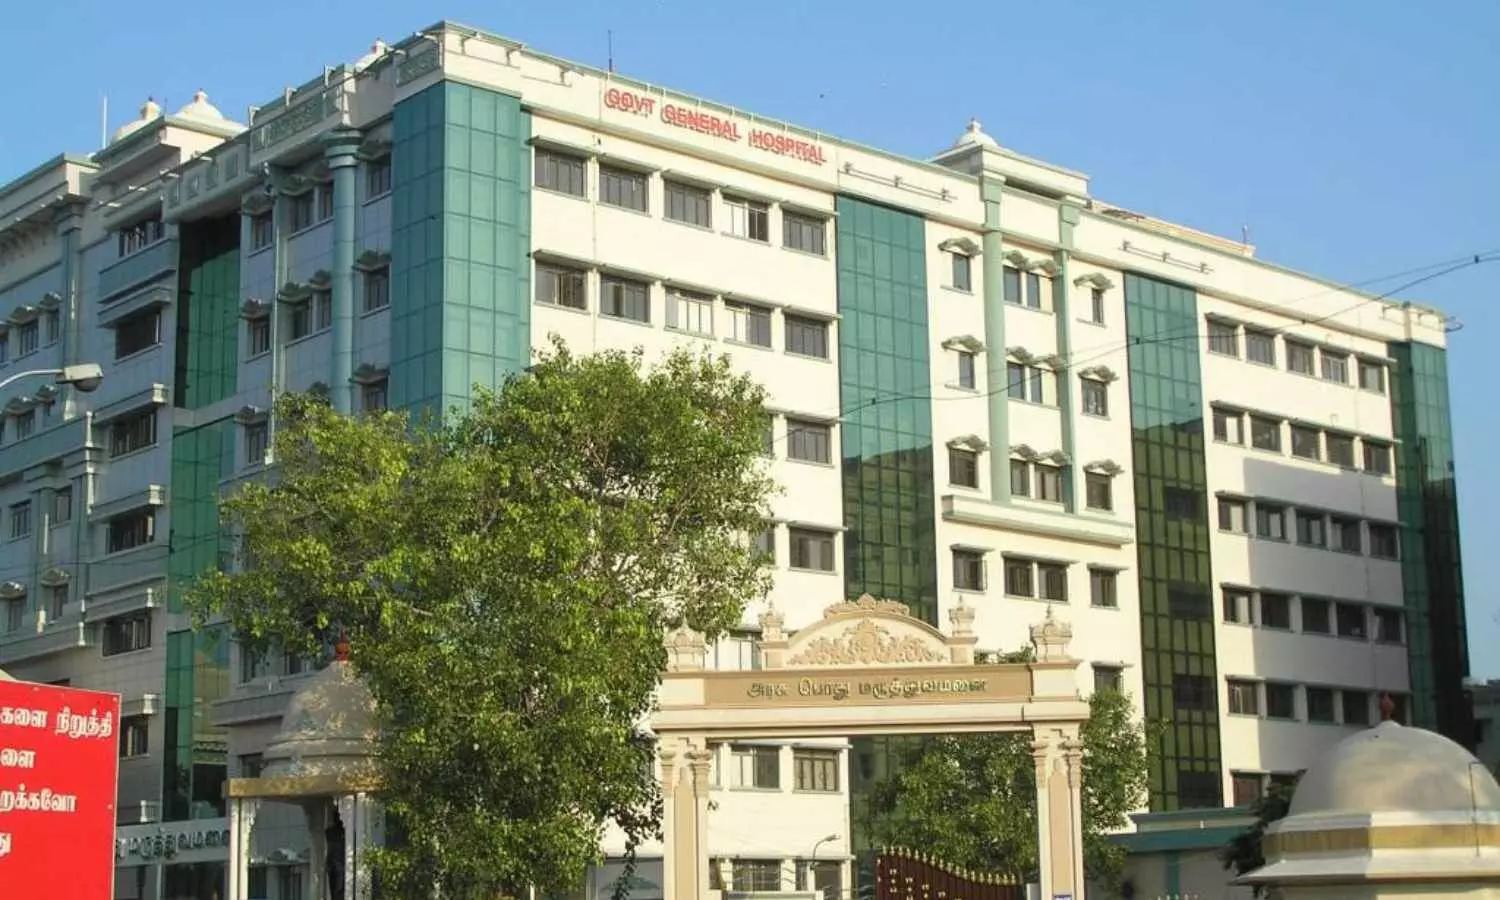 Rajiv Gandhi General Hospital secures first spot among Tamil Nadu Govt hospitals